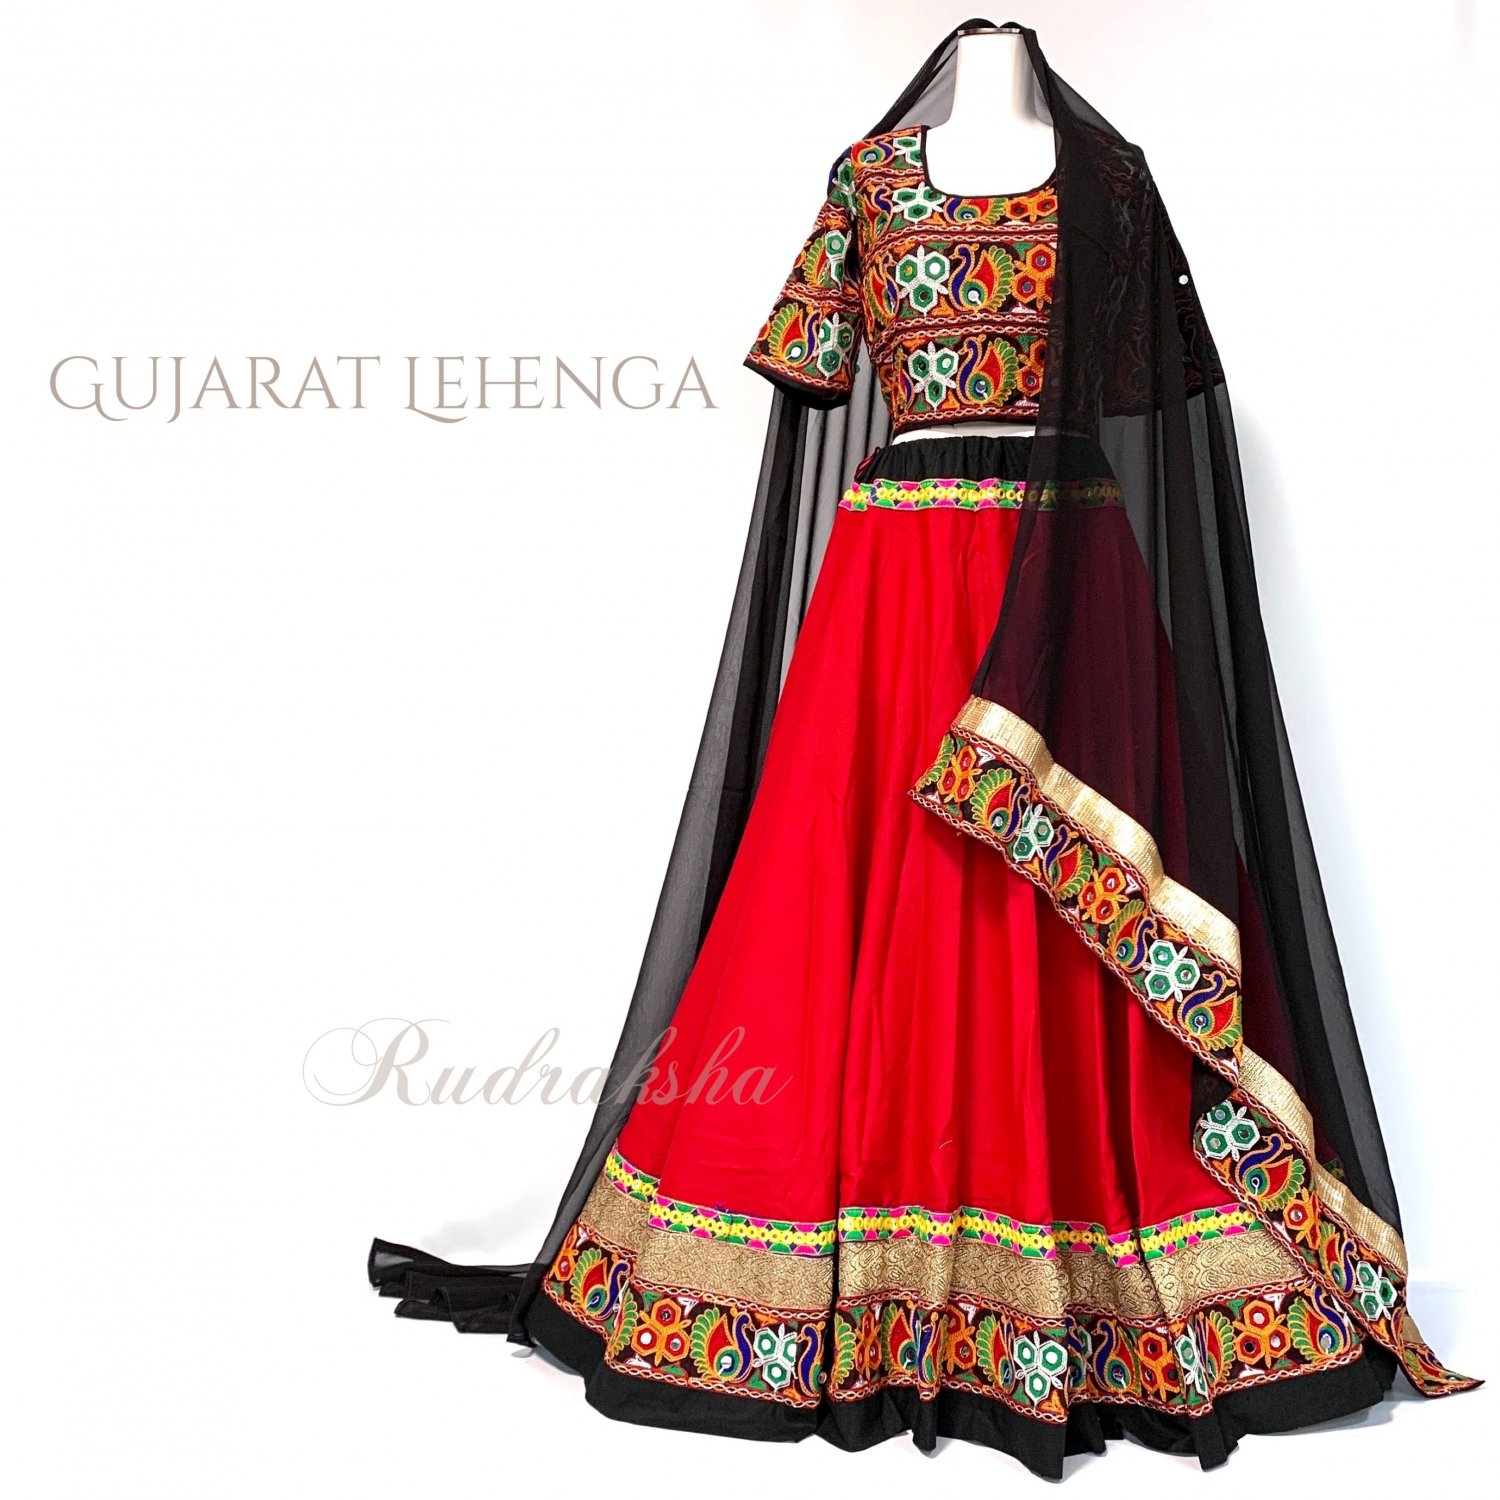 Gujarati Garba Lehenga レッドxブラック インド 民族衣装 ガルバ ナヴラトリ ダンディヤレヘンガ インドファッション インドダンス衣装の通販専門店 Rudraksha